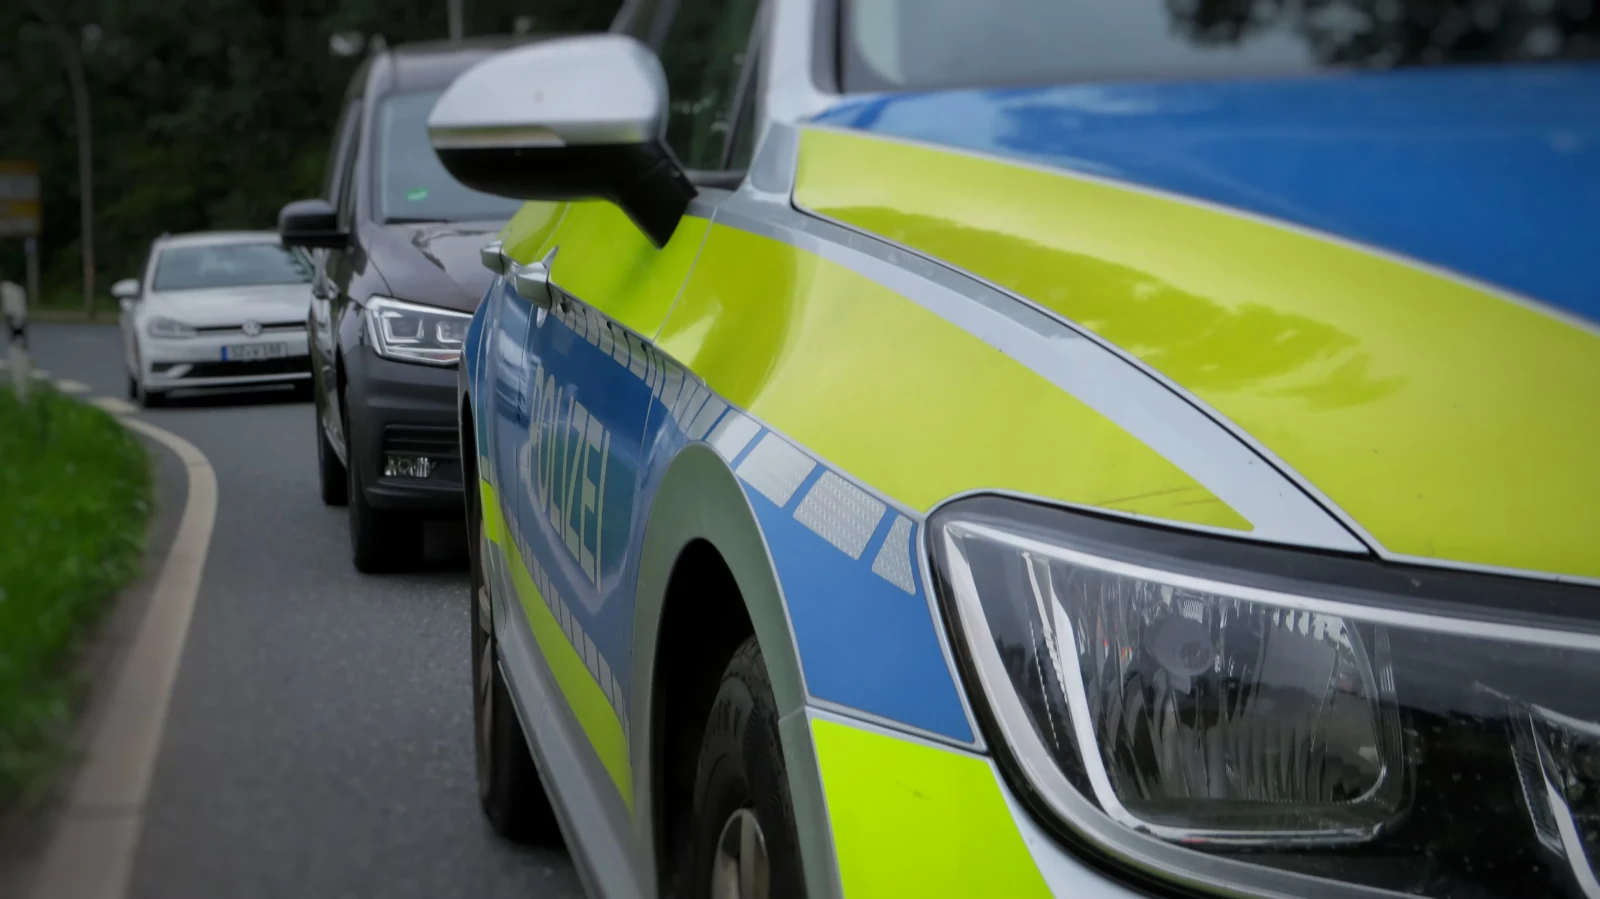 Polizei zieht nach Einsatz in der Gemeinde Krummh&ouml;rn Bilanz